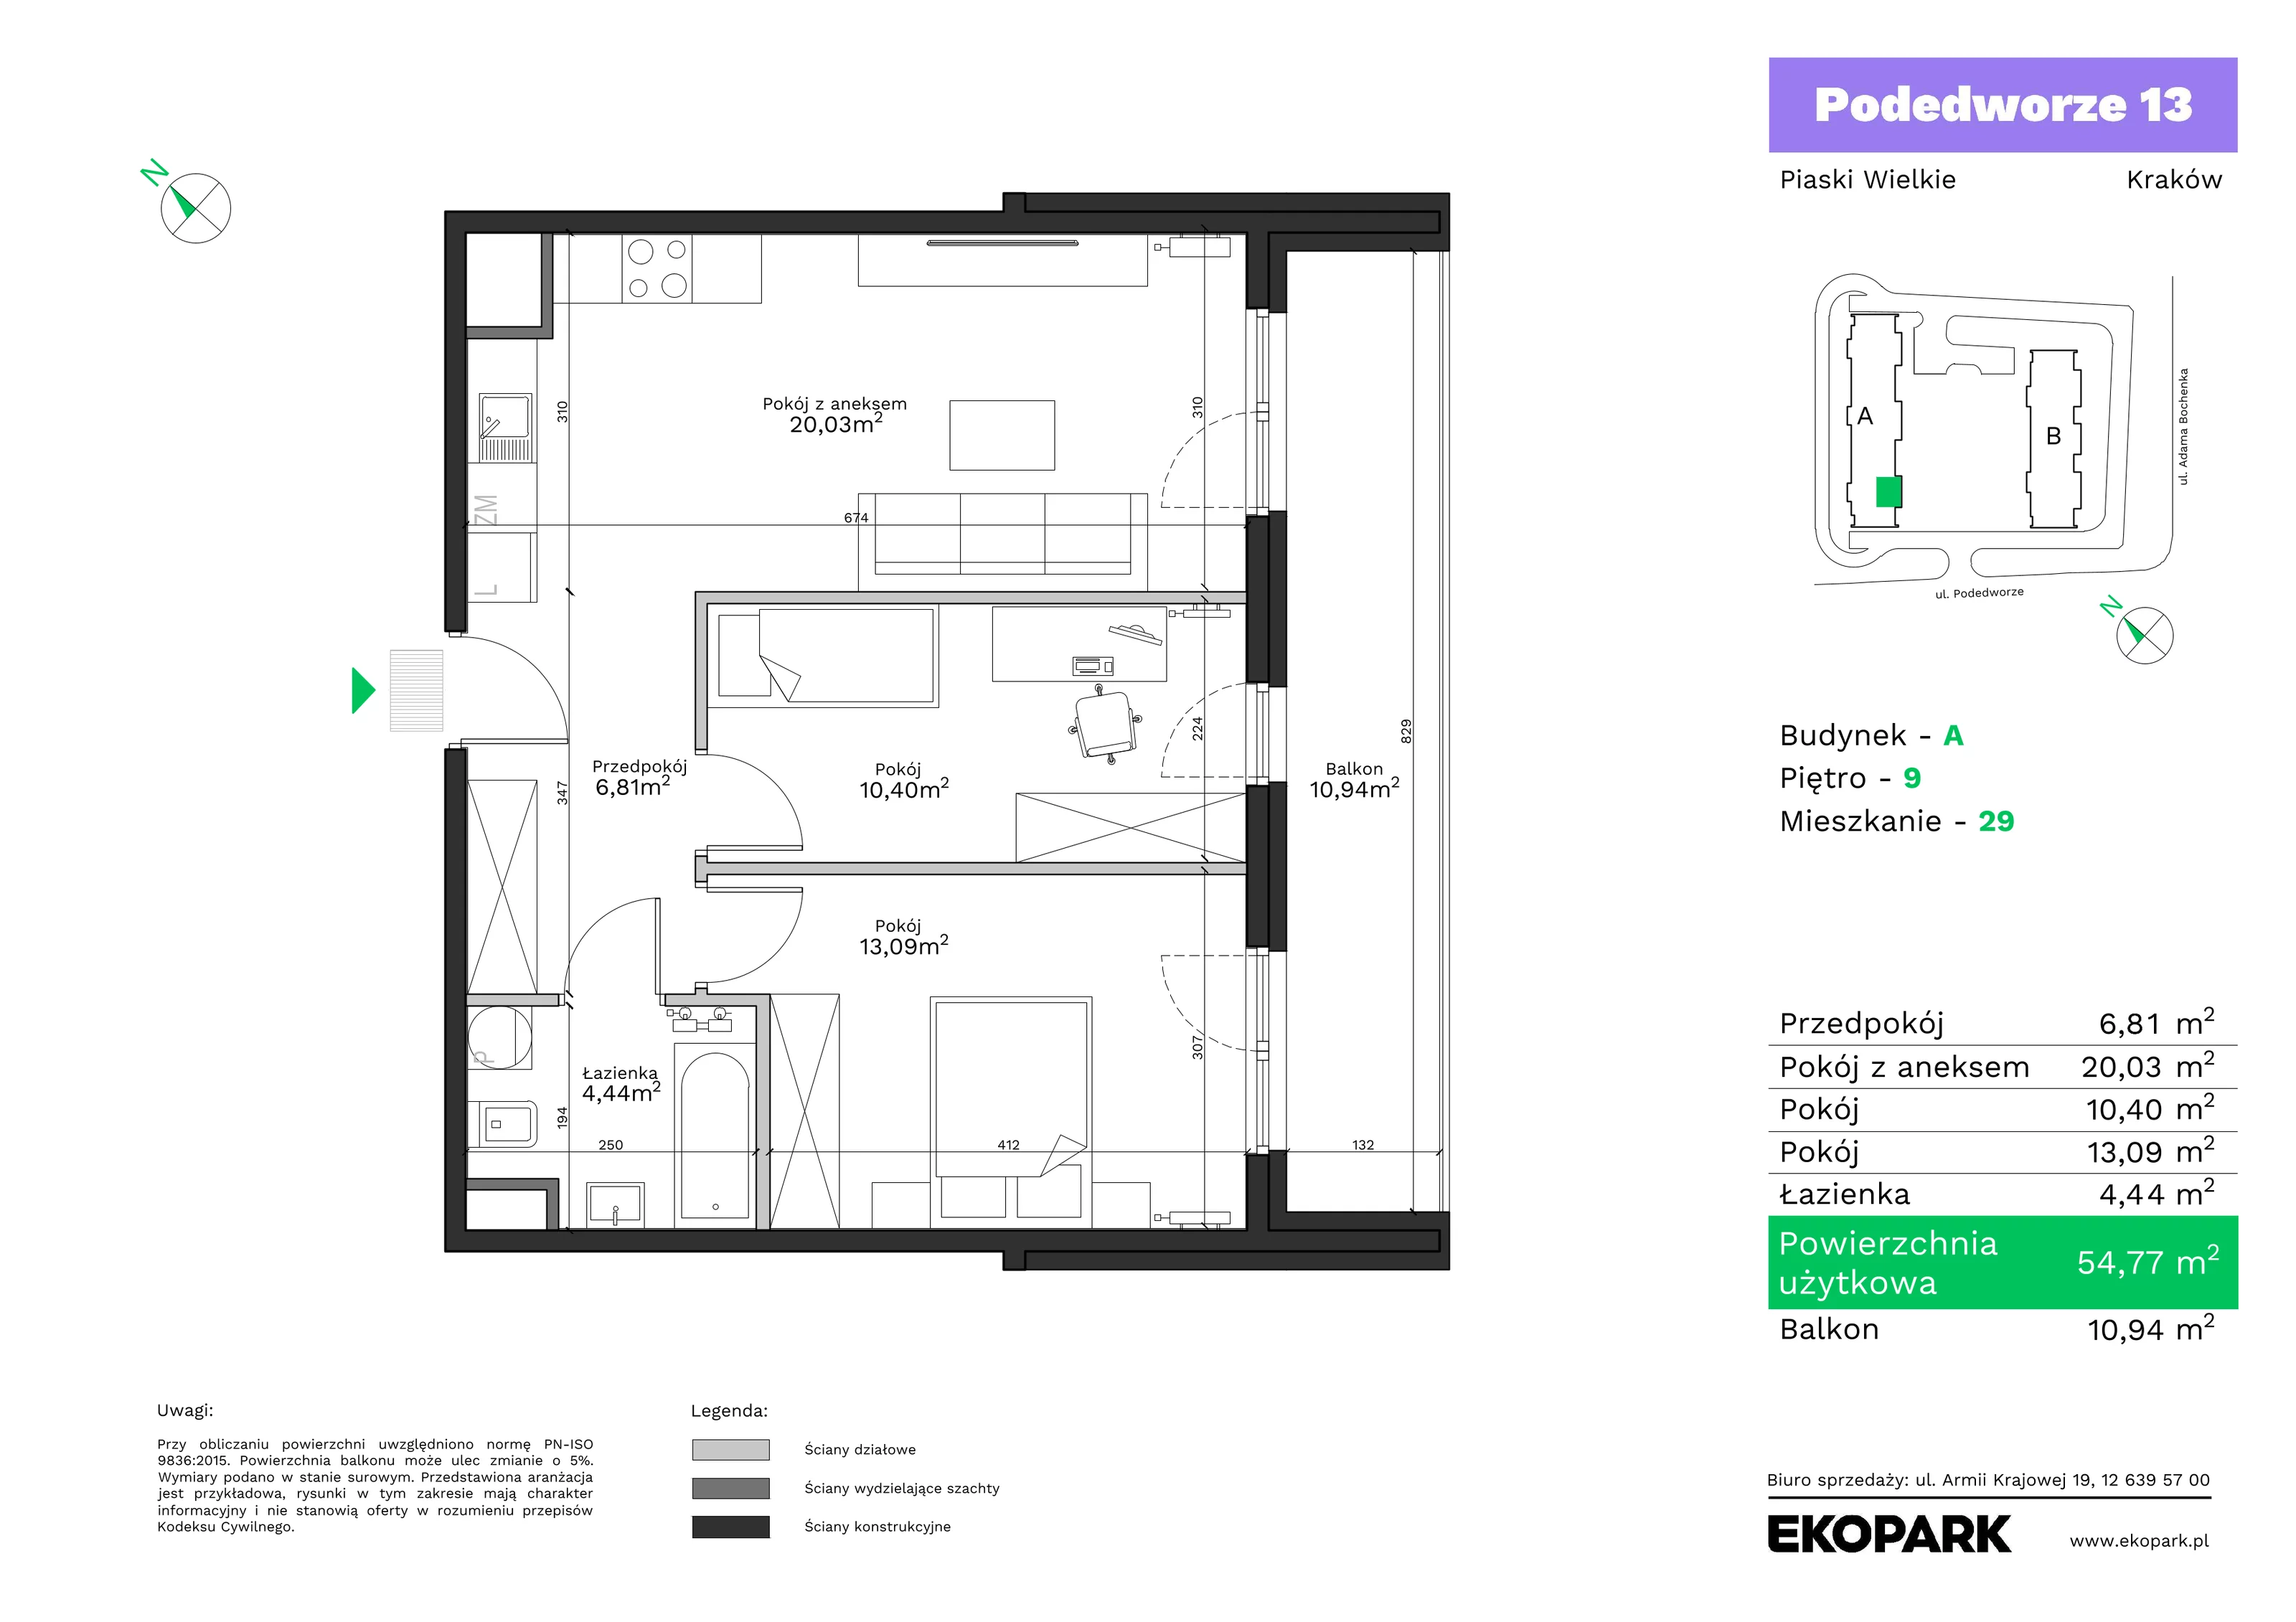 Mieszkanie 54,77 m², piętro 9, oferta nr A29, Podedworze 13, Kraków, Podgórze Duchackie, Piaski Wielkie, ul. Podedworze 13